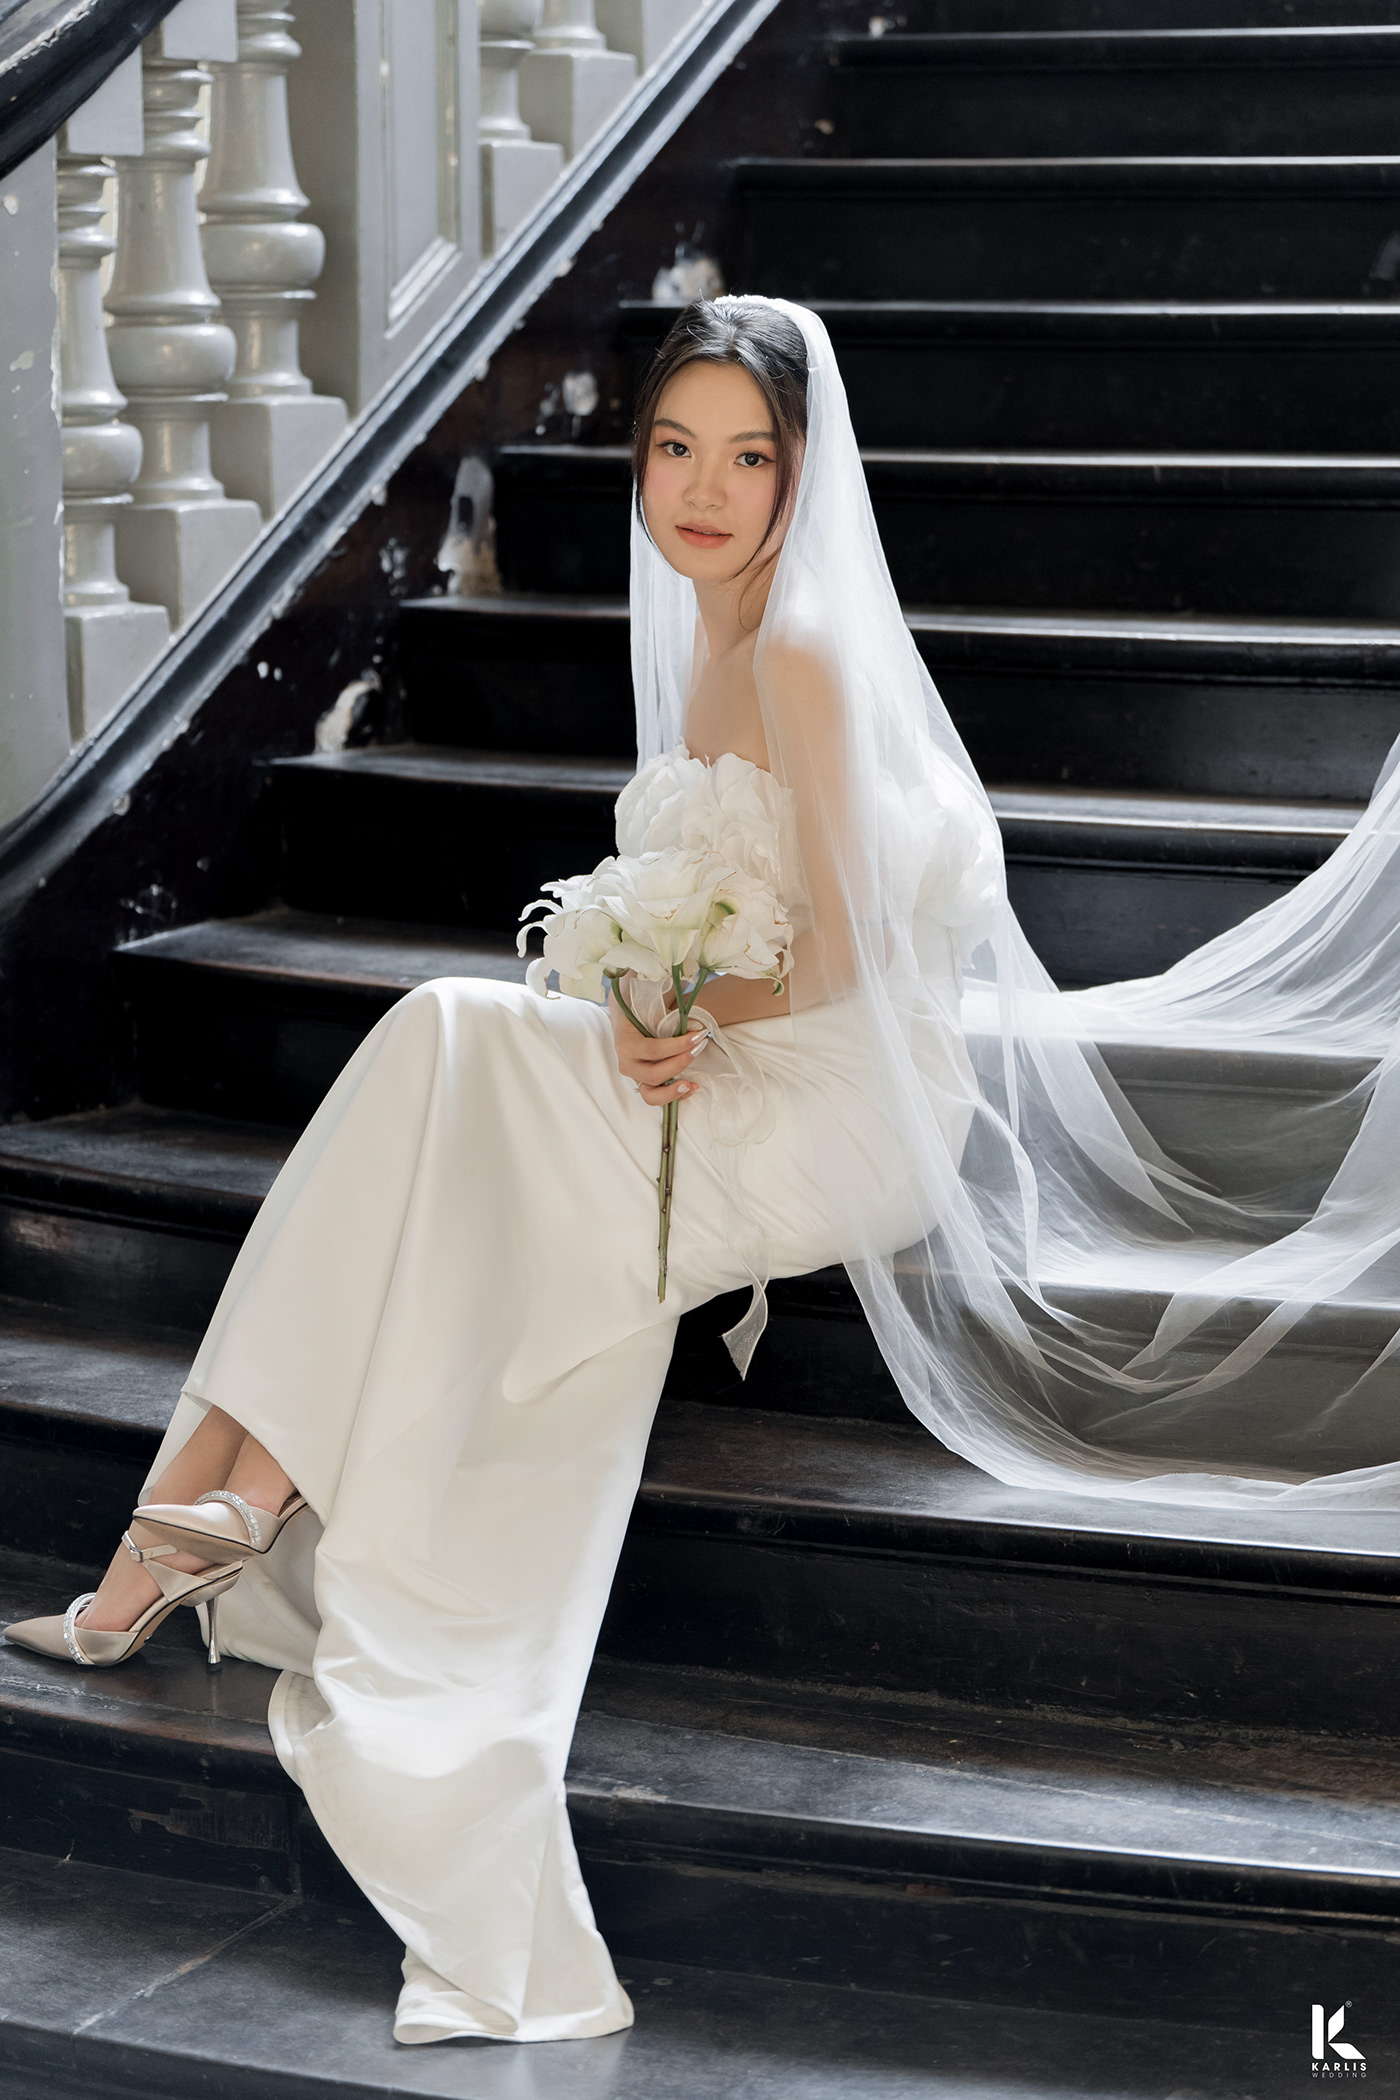 WEDDING DRESS bride groom Wedding Photography Love heart stylist Fashion  weddingstyling weddingstylist